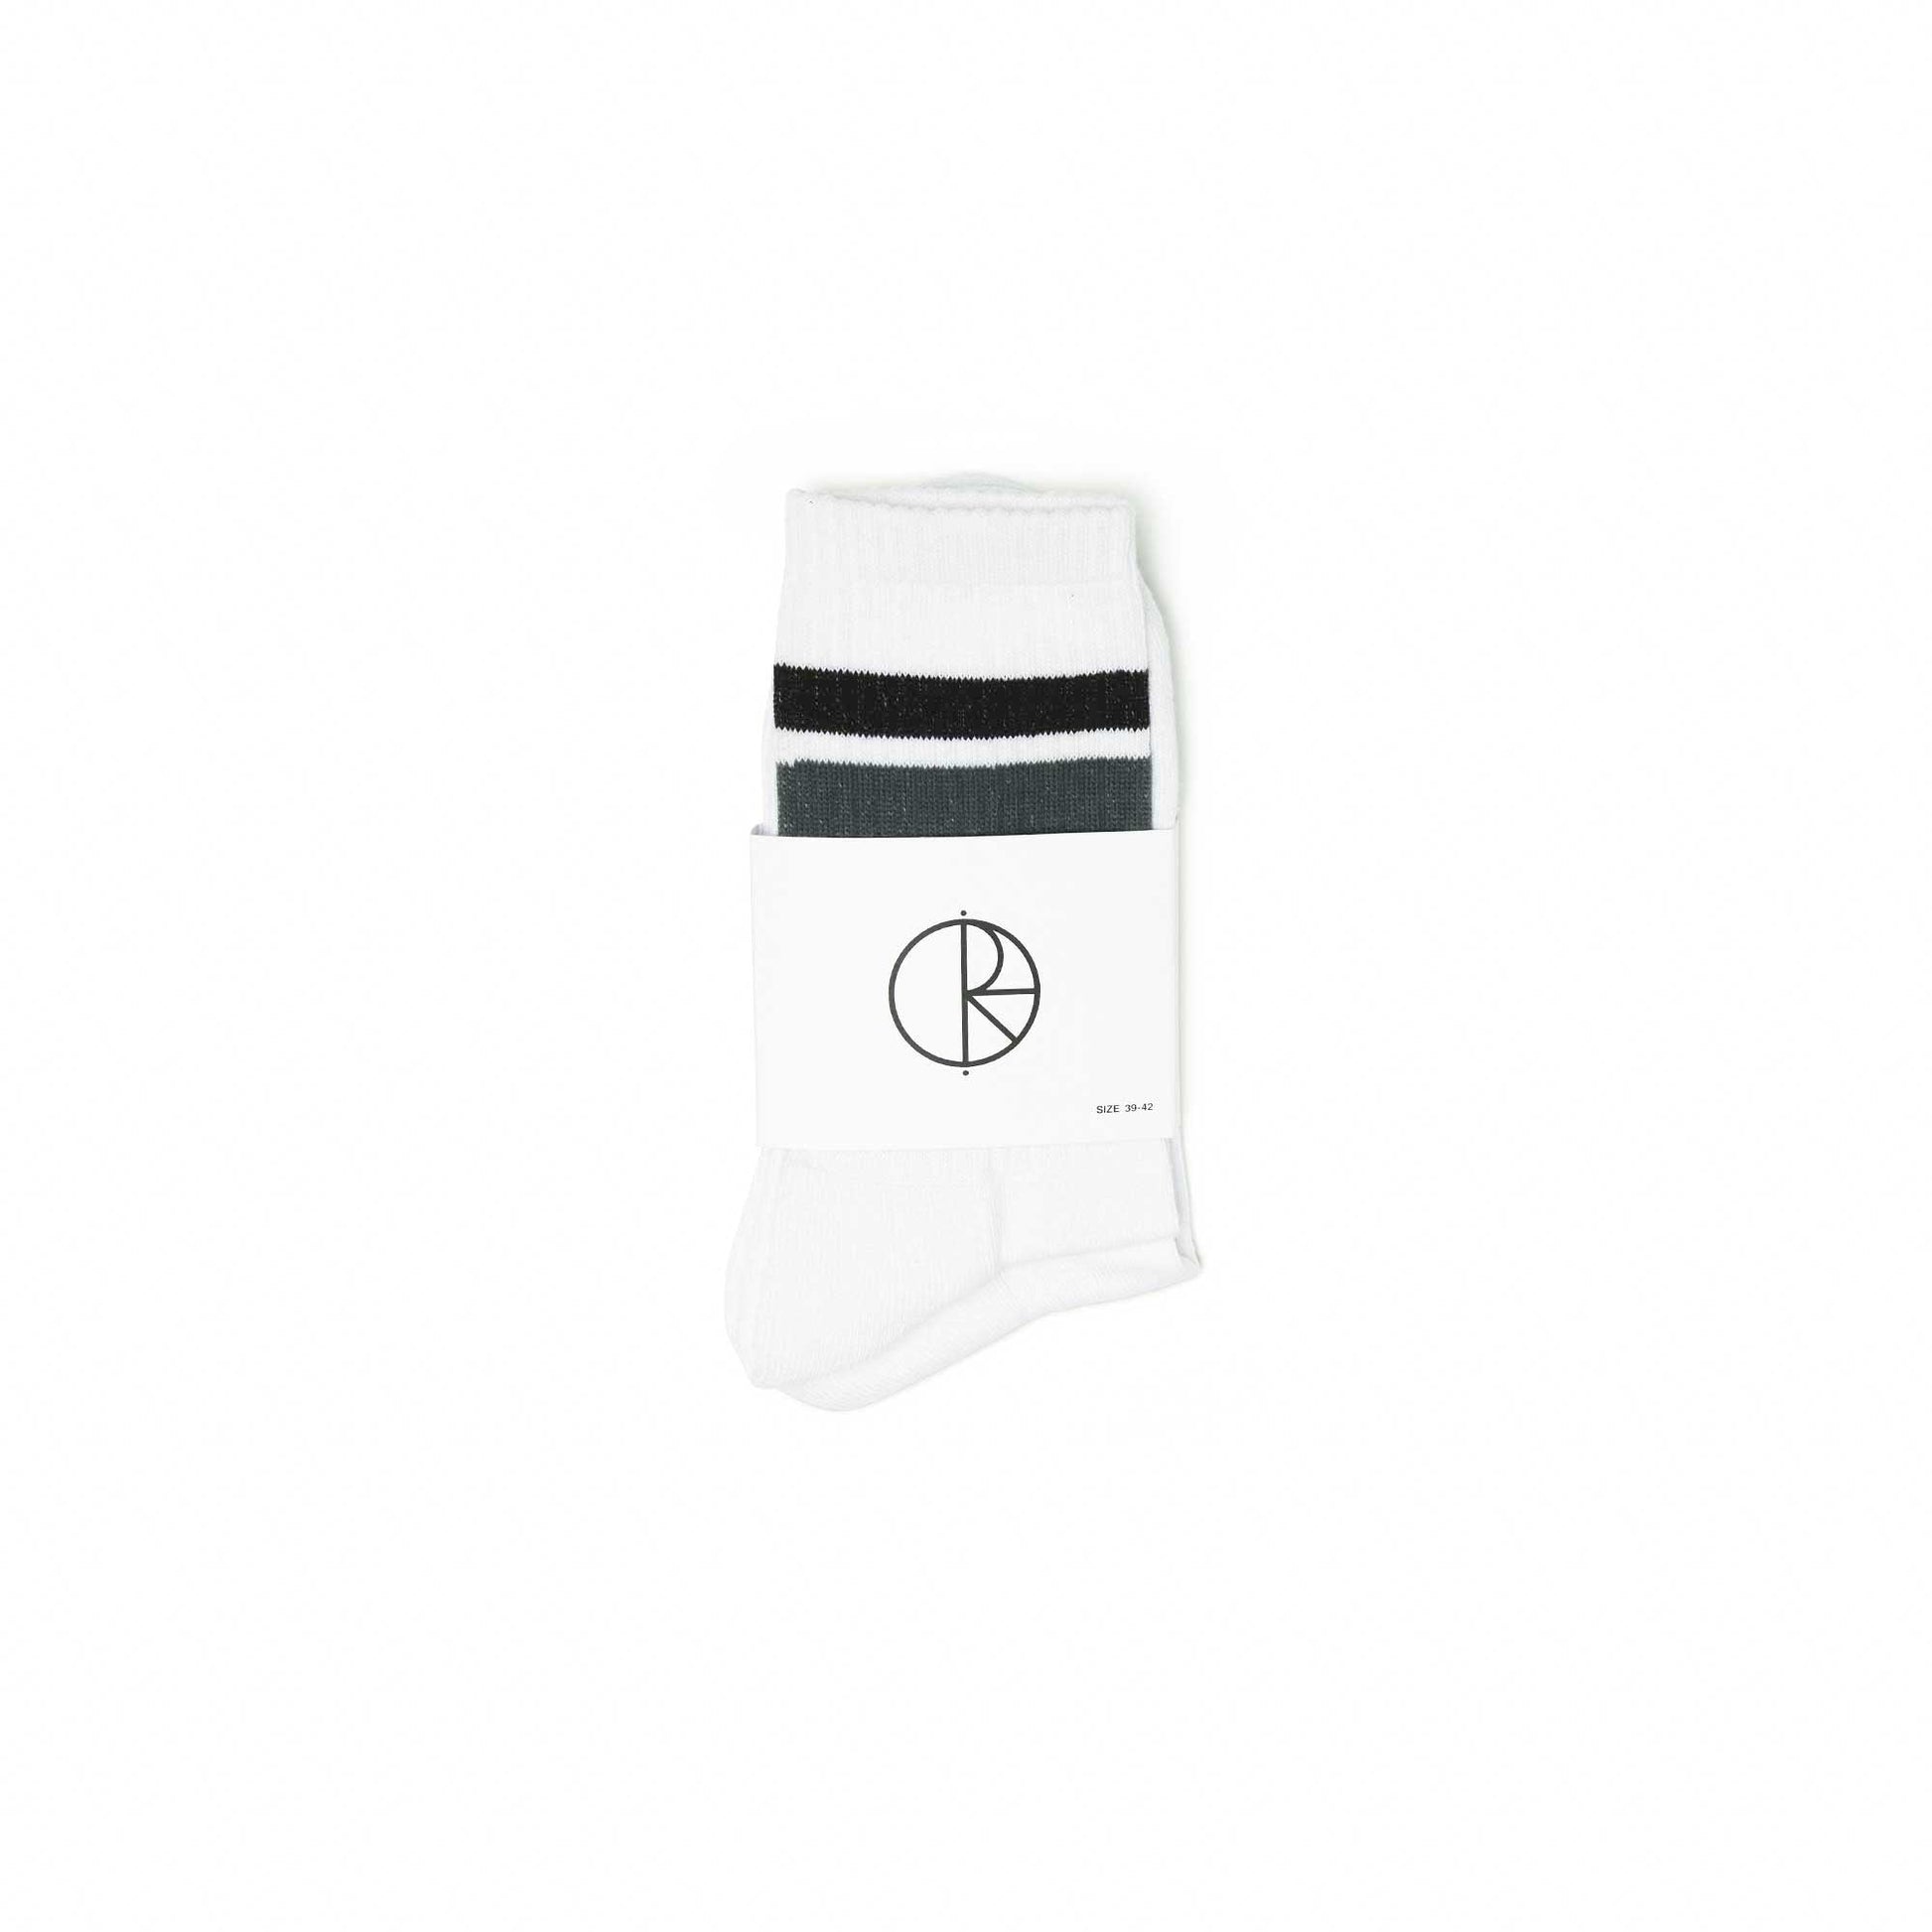 Polar Stripe socks, white/black/grey, white/black/grey - Tiki Room Skateboards - 2